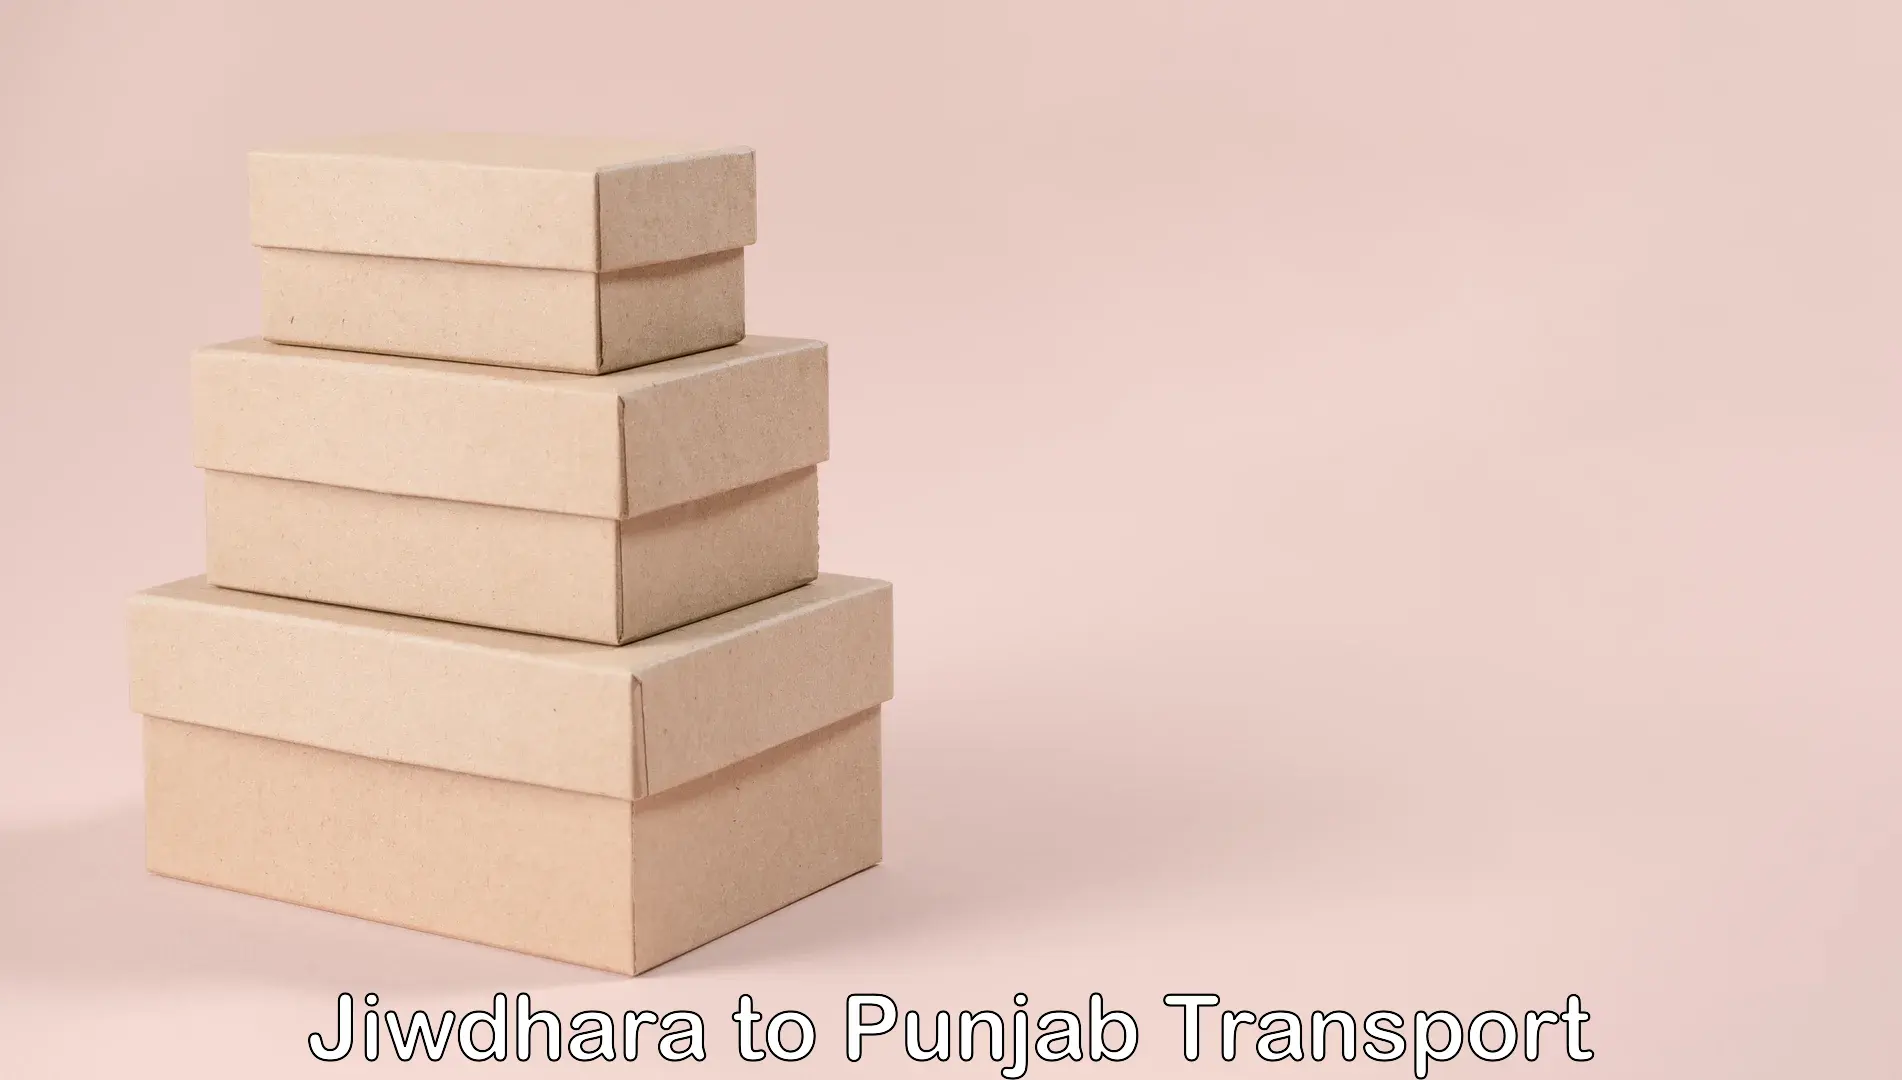 International cargo transportation services Jiwdhara to Raikot